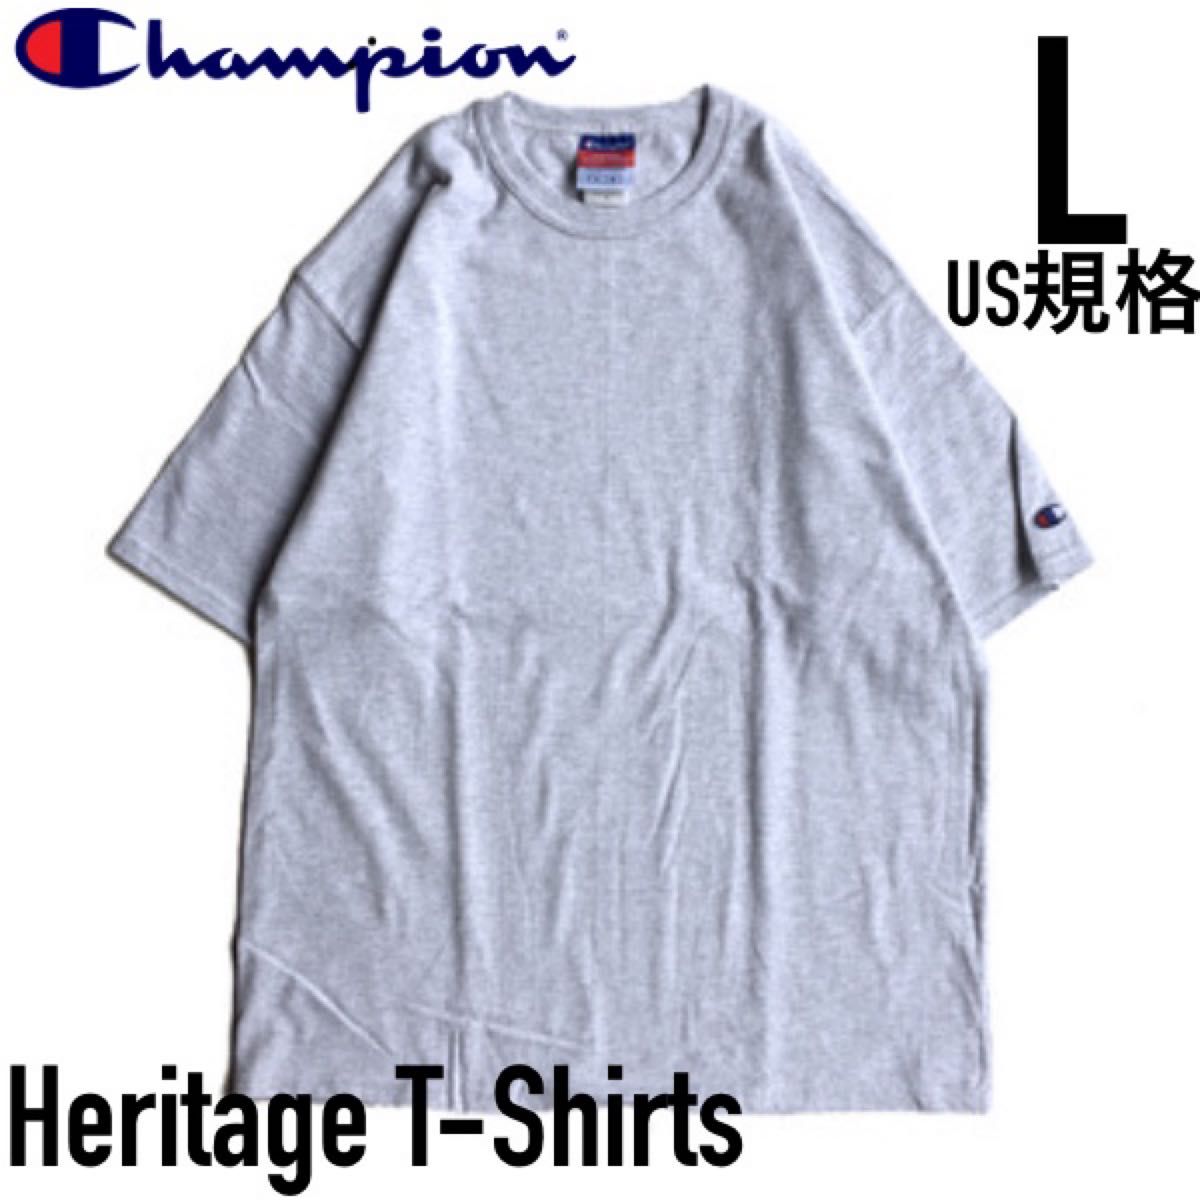 Champion Heritage Jersey T-Shirts チャンピオン ヘリテージTシャツ 無地